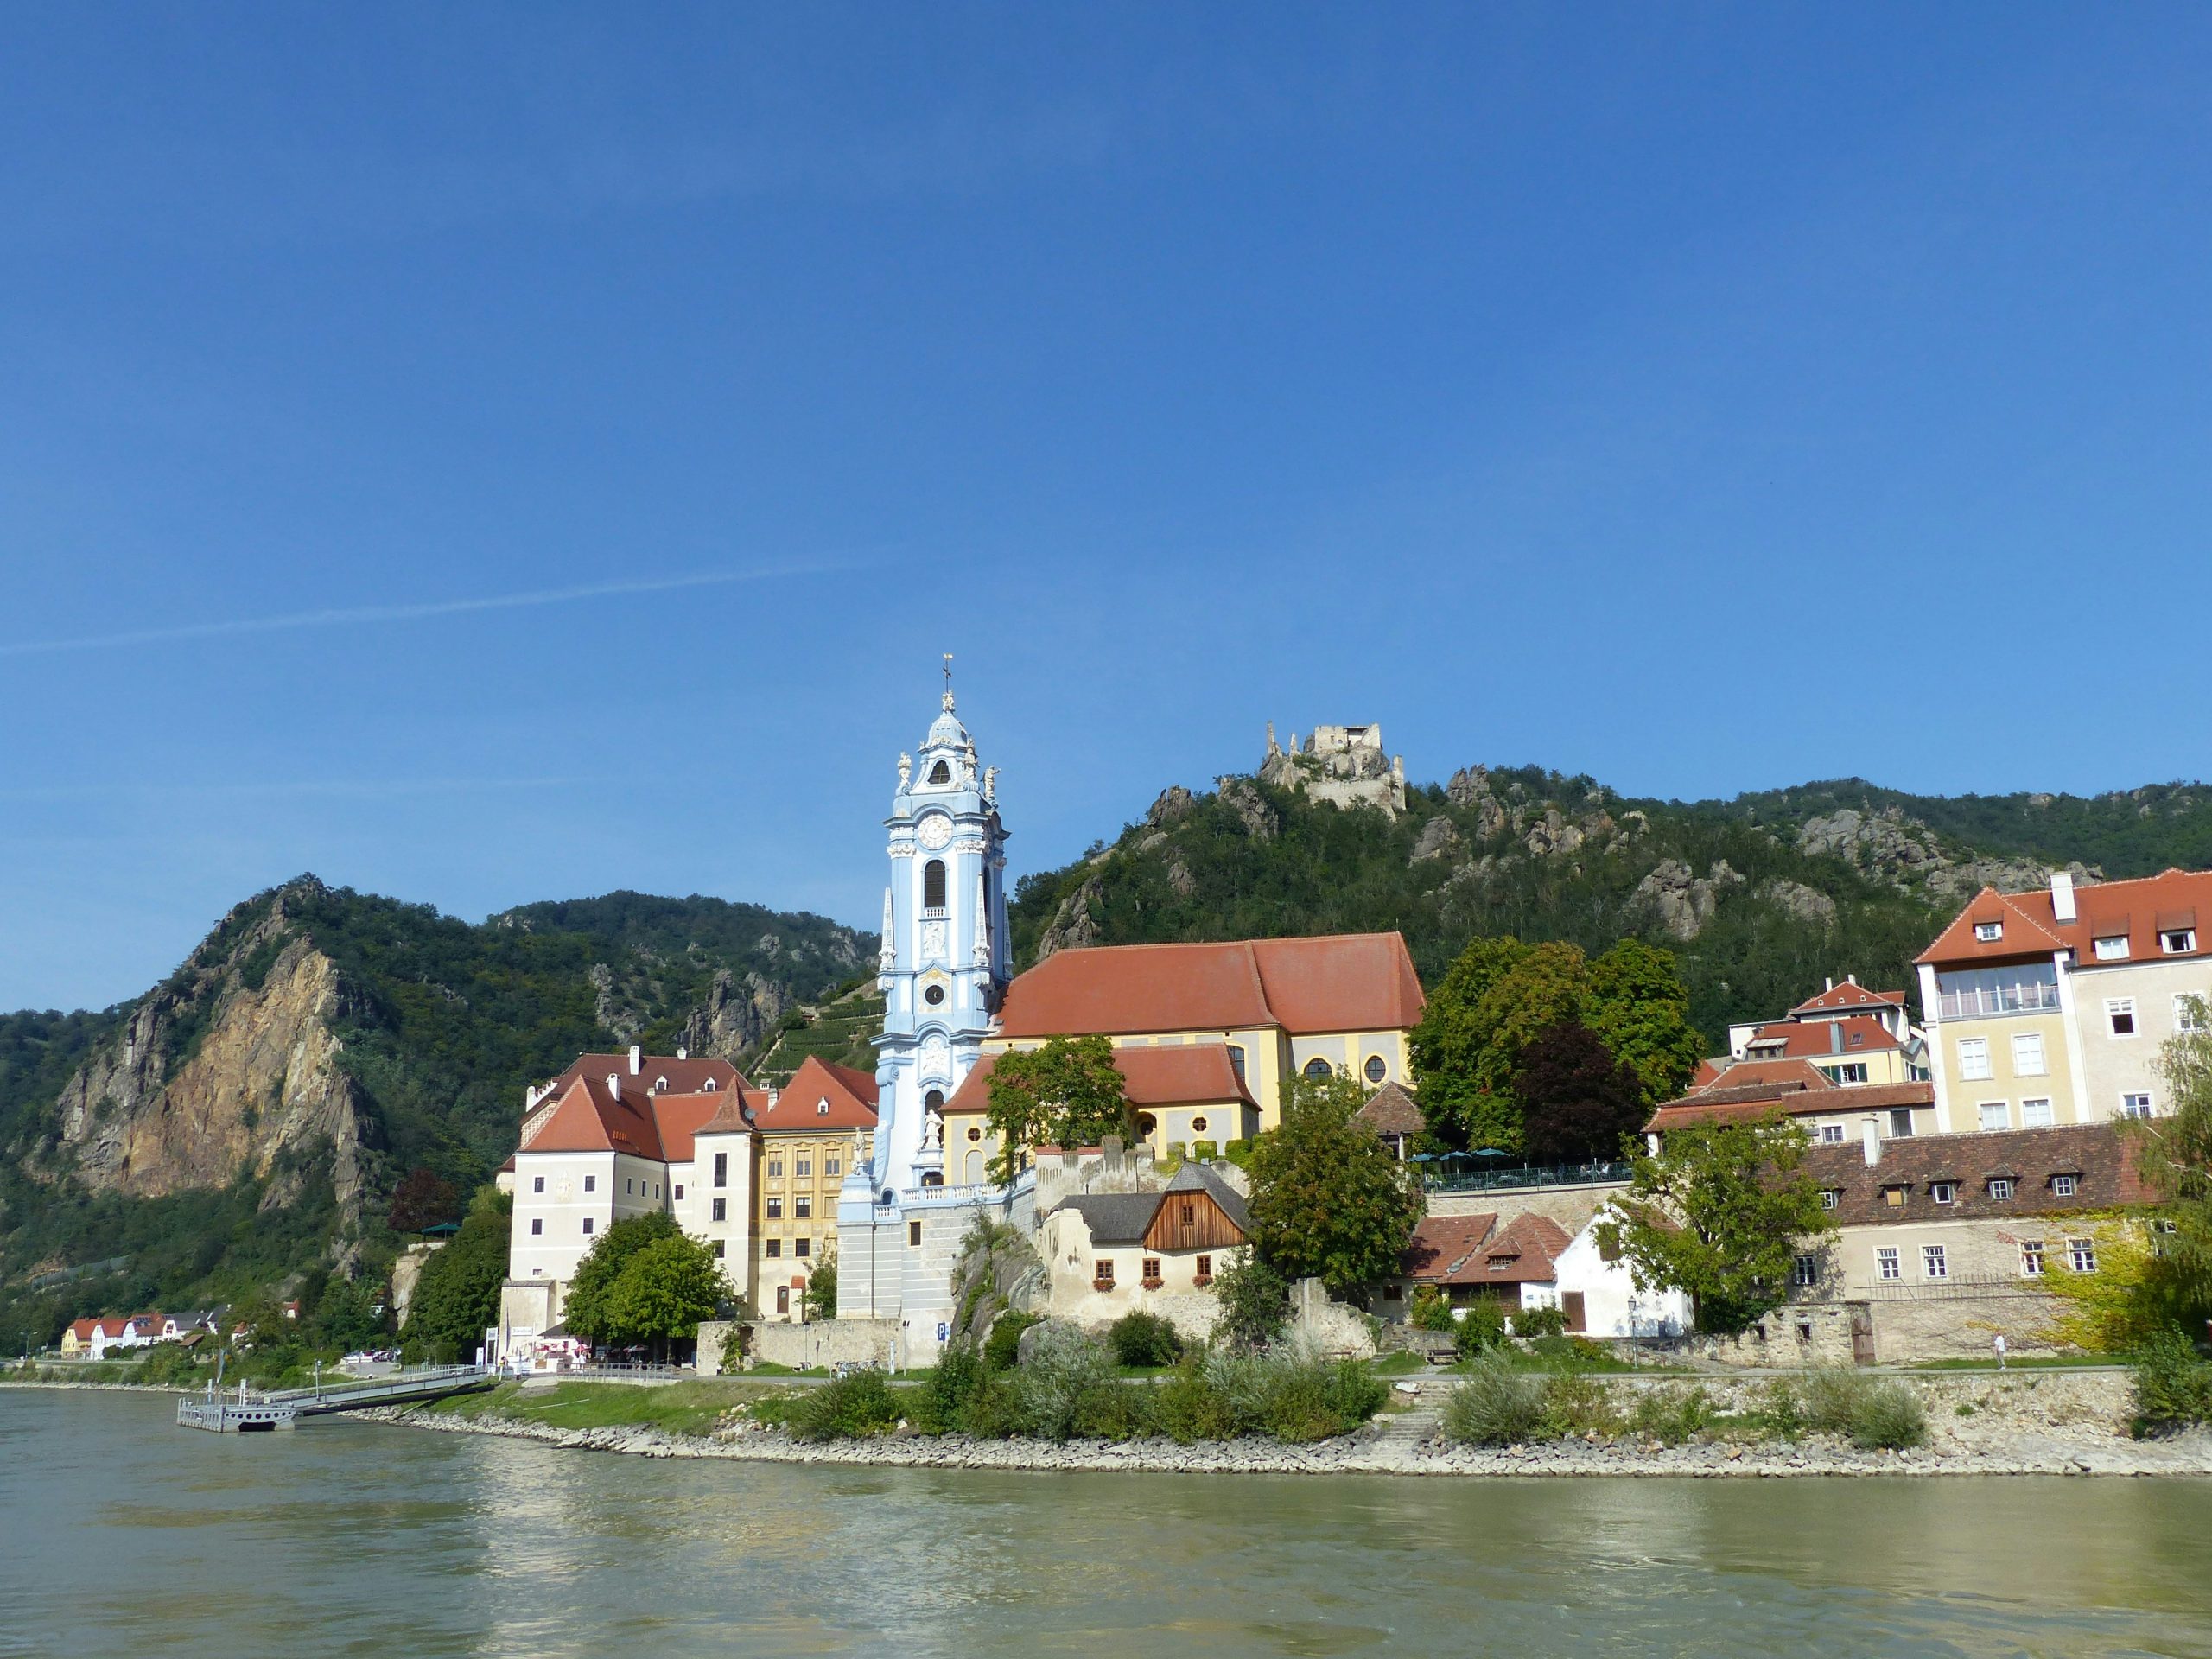 Blick auf Schloss Dürnstein von der Donau aus. Der Turm von Durnstein ist weiß blau und daher sehr auffällig. Das umgebende Gebäude ist gelb. Im Hintergrund sieht man bewaldete Hügel.